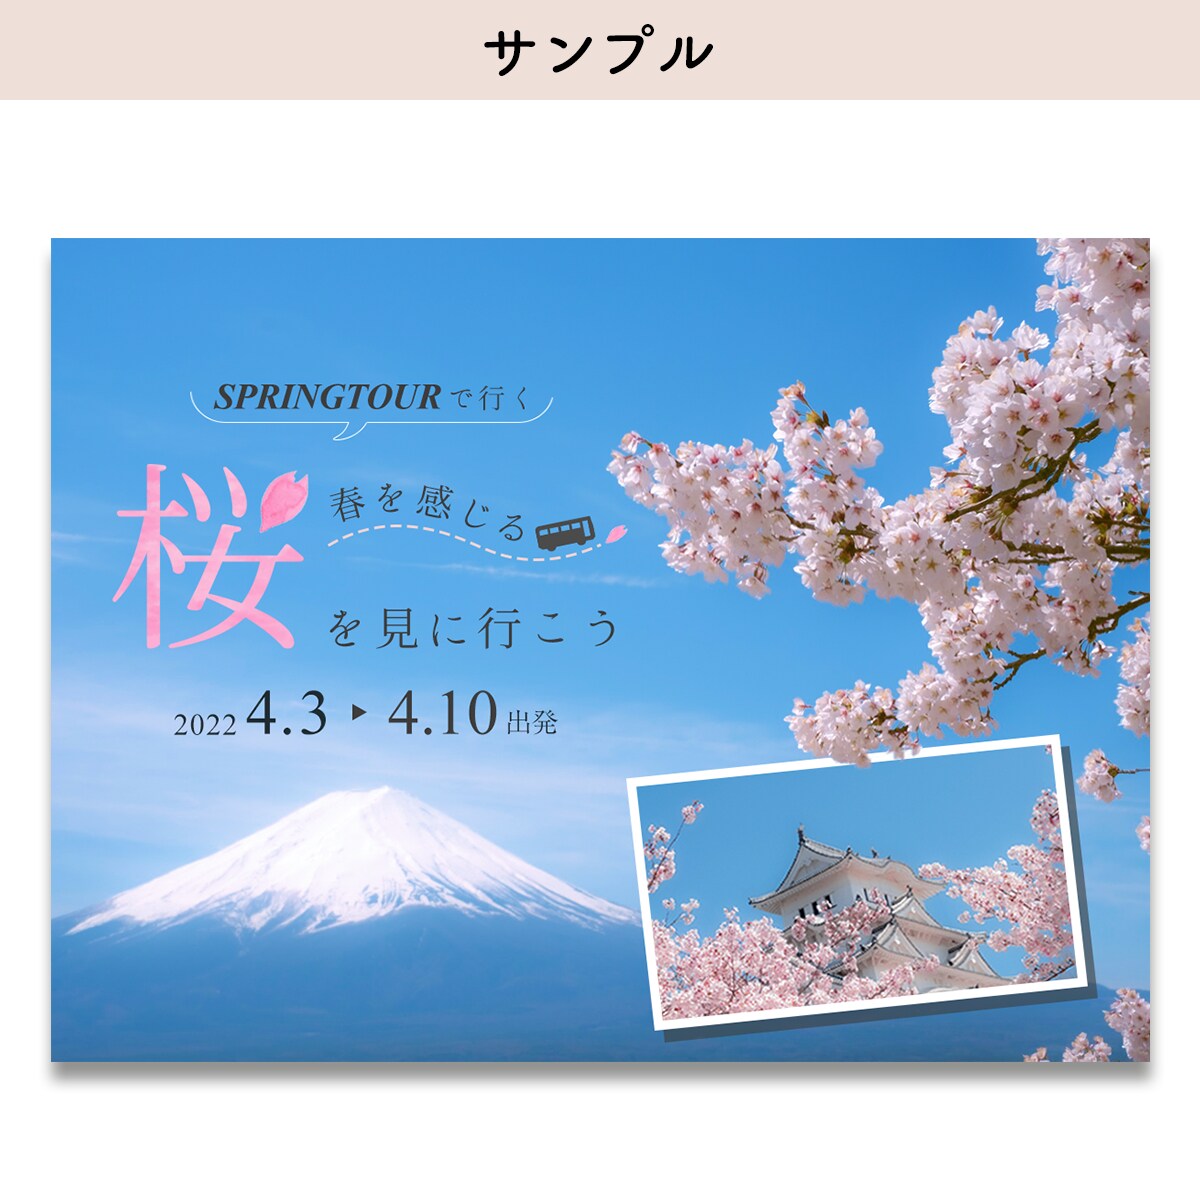 【 自主制作 】桜の名所を巡るツアー